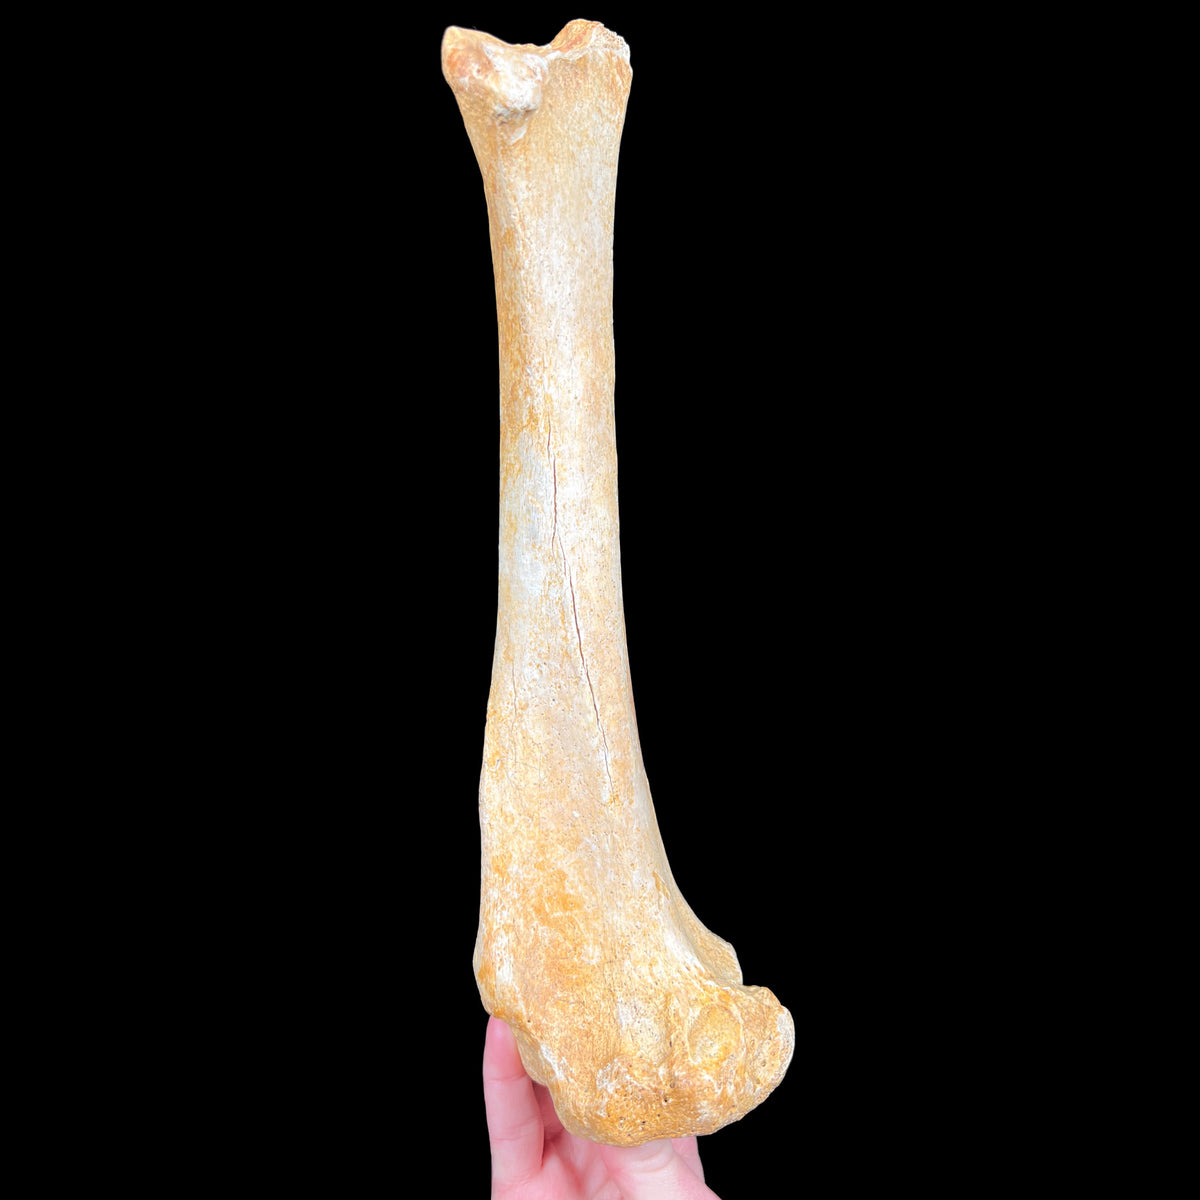 Ursus spelaeus bone